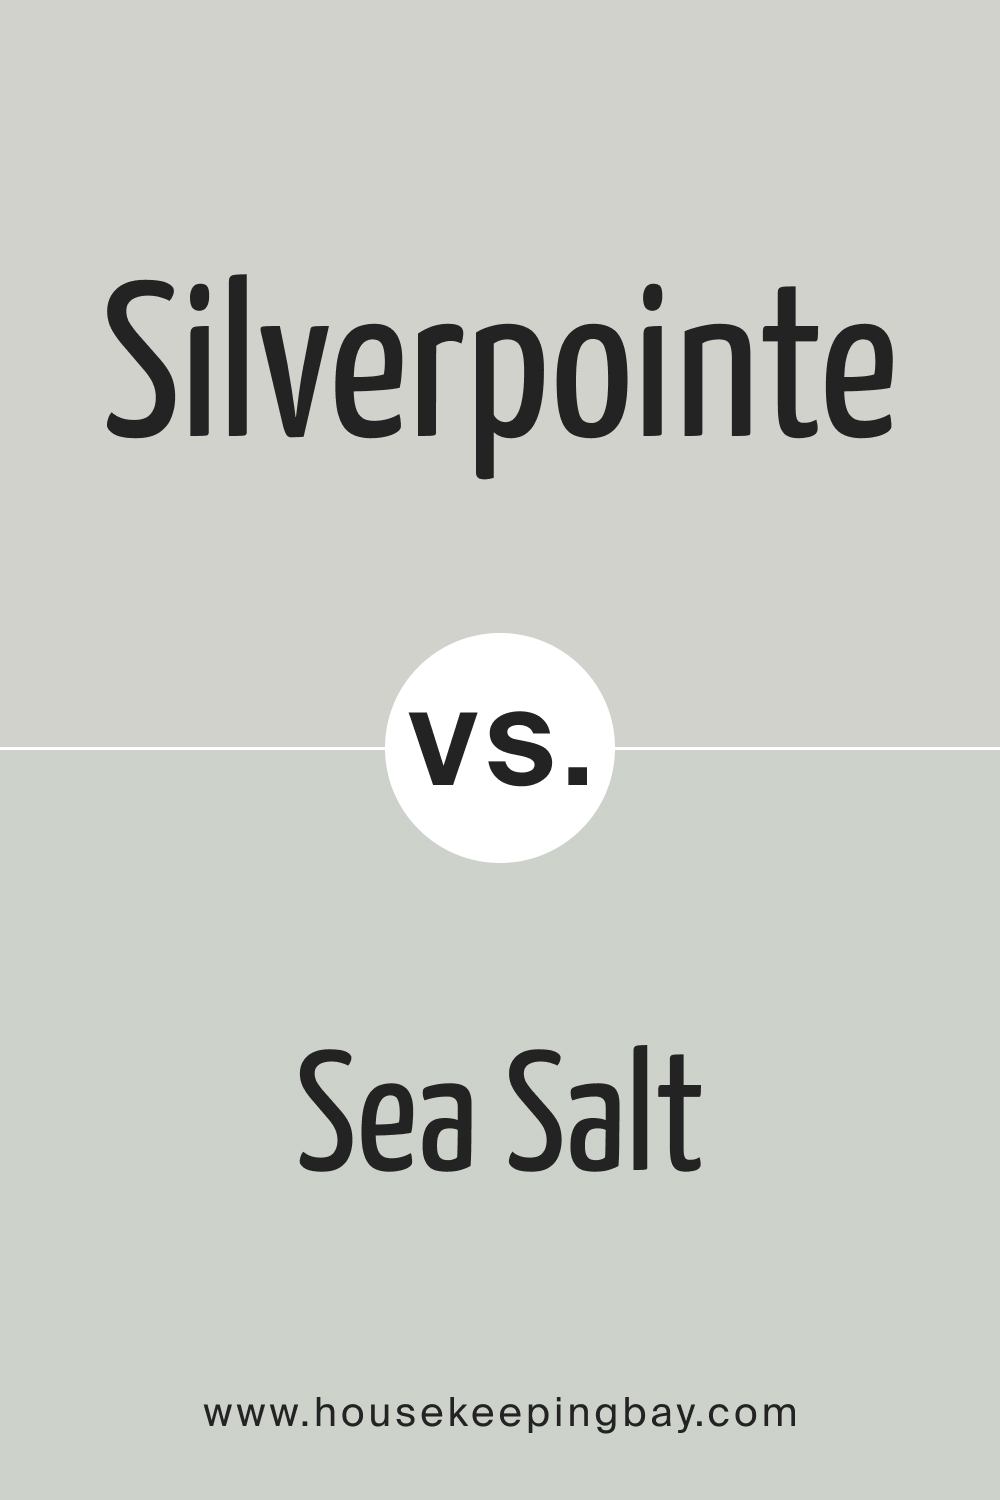 SW Silverpointe vs Sea Salt